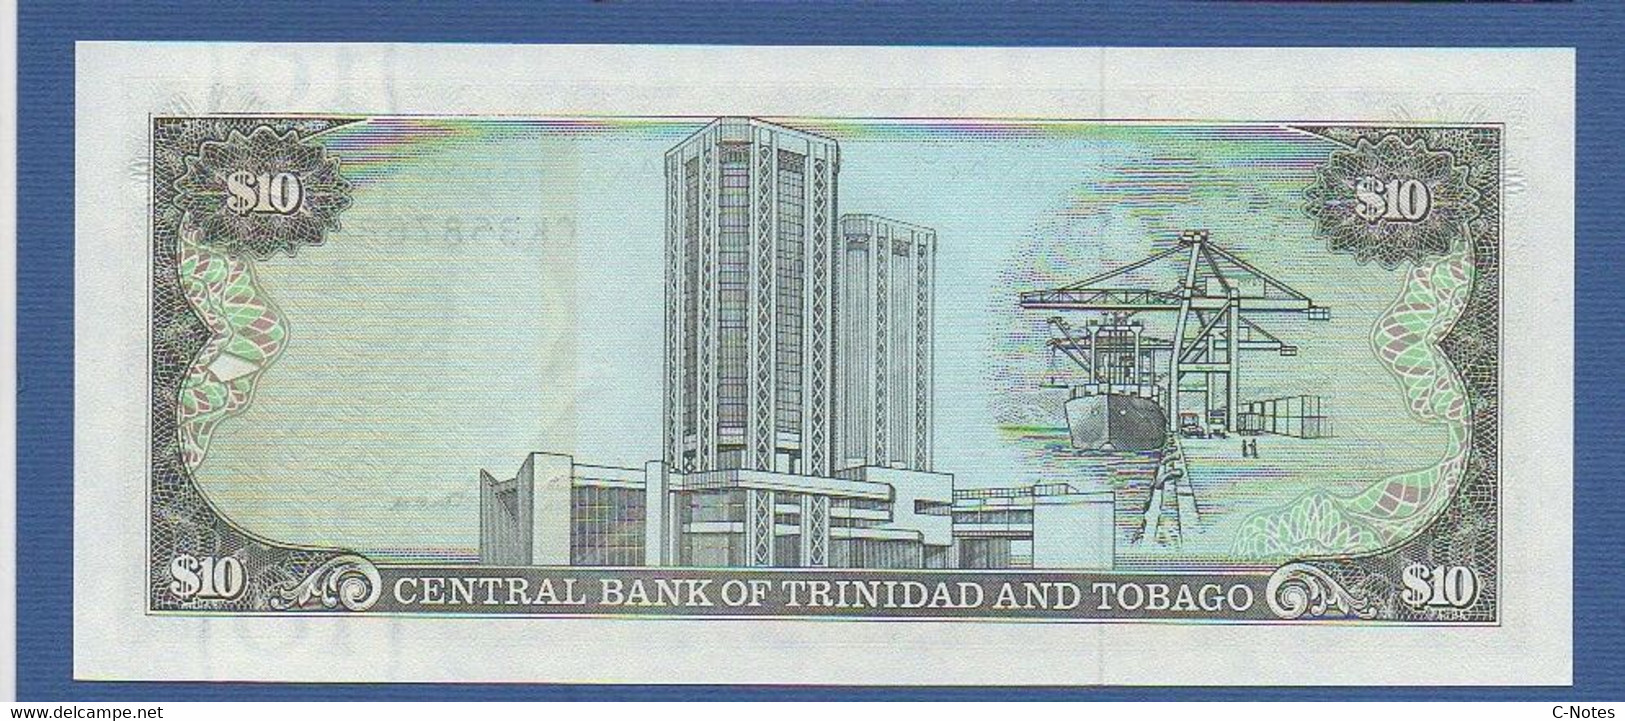 TRINIDAD & TOBAGO - P.38d – 10 Dollars ND (1985) "Chap. 79.02 - Arms" Issue, UNC, Serie CK 358768 - Trinidad Y Tobago